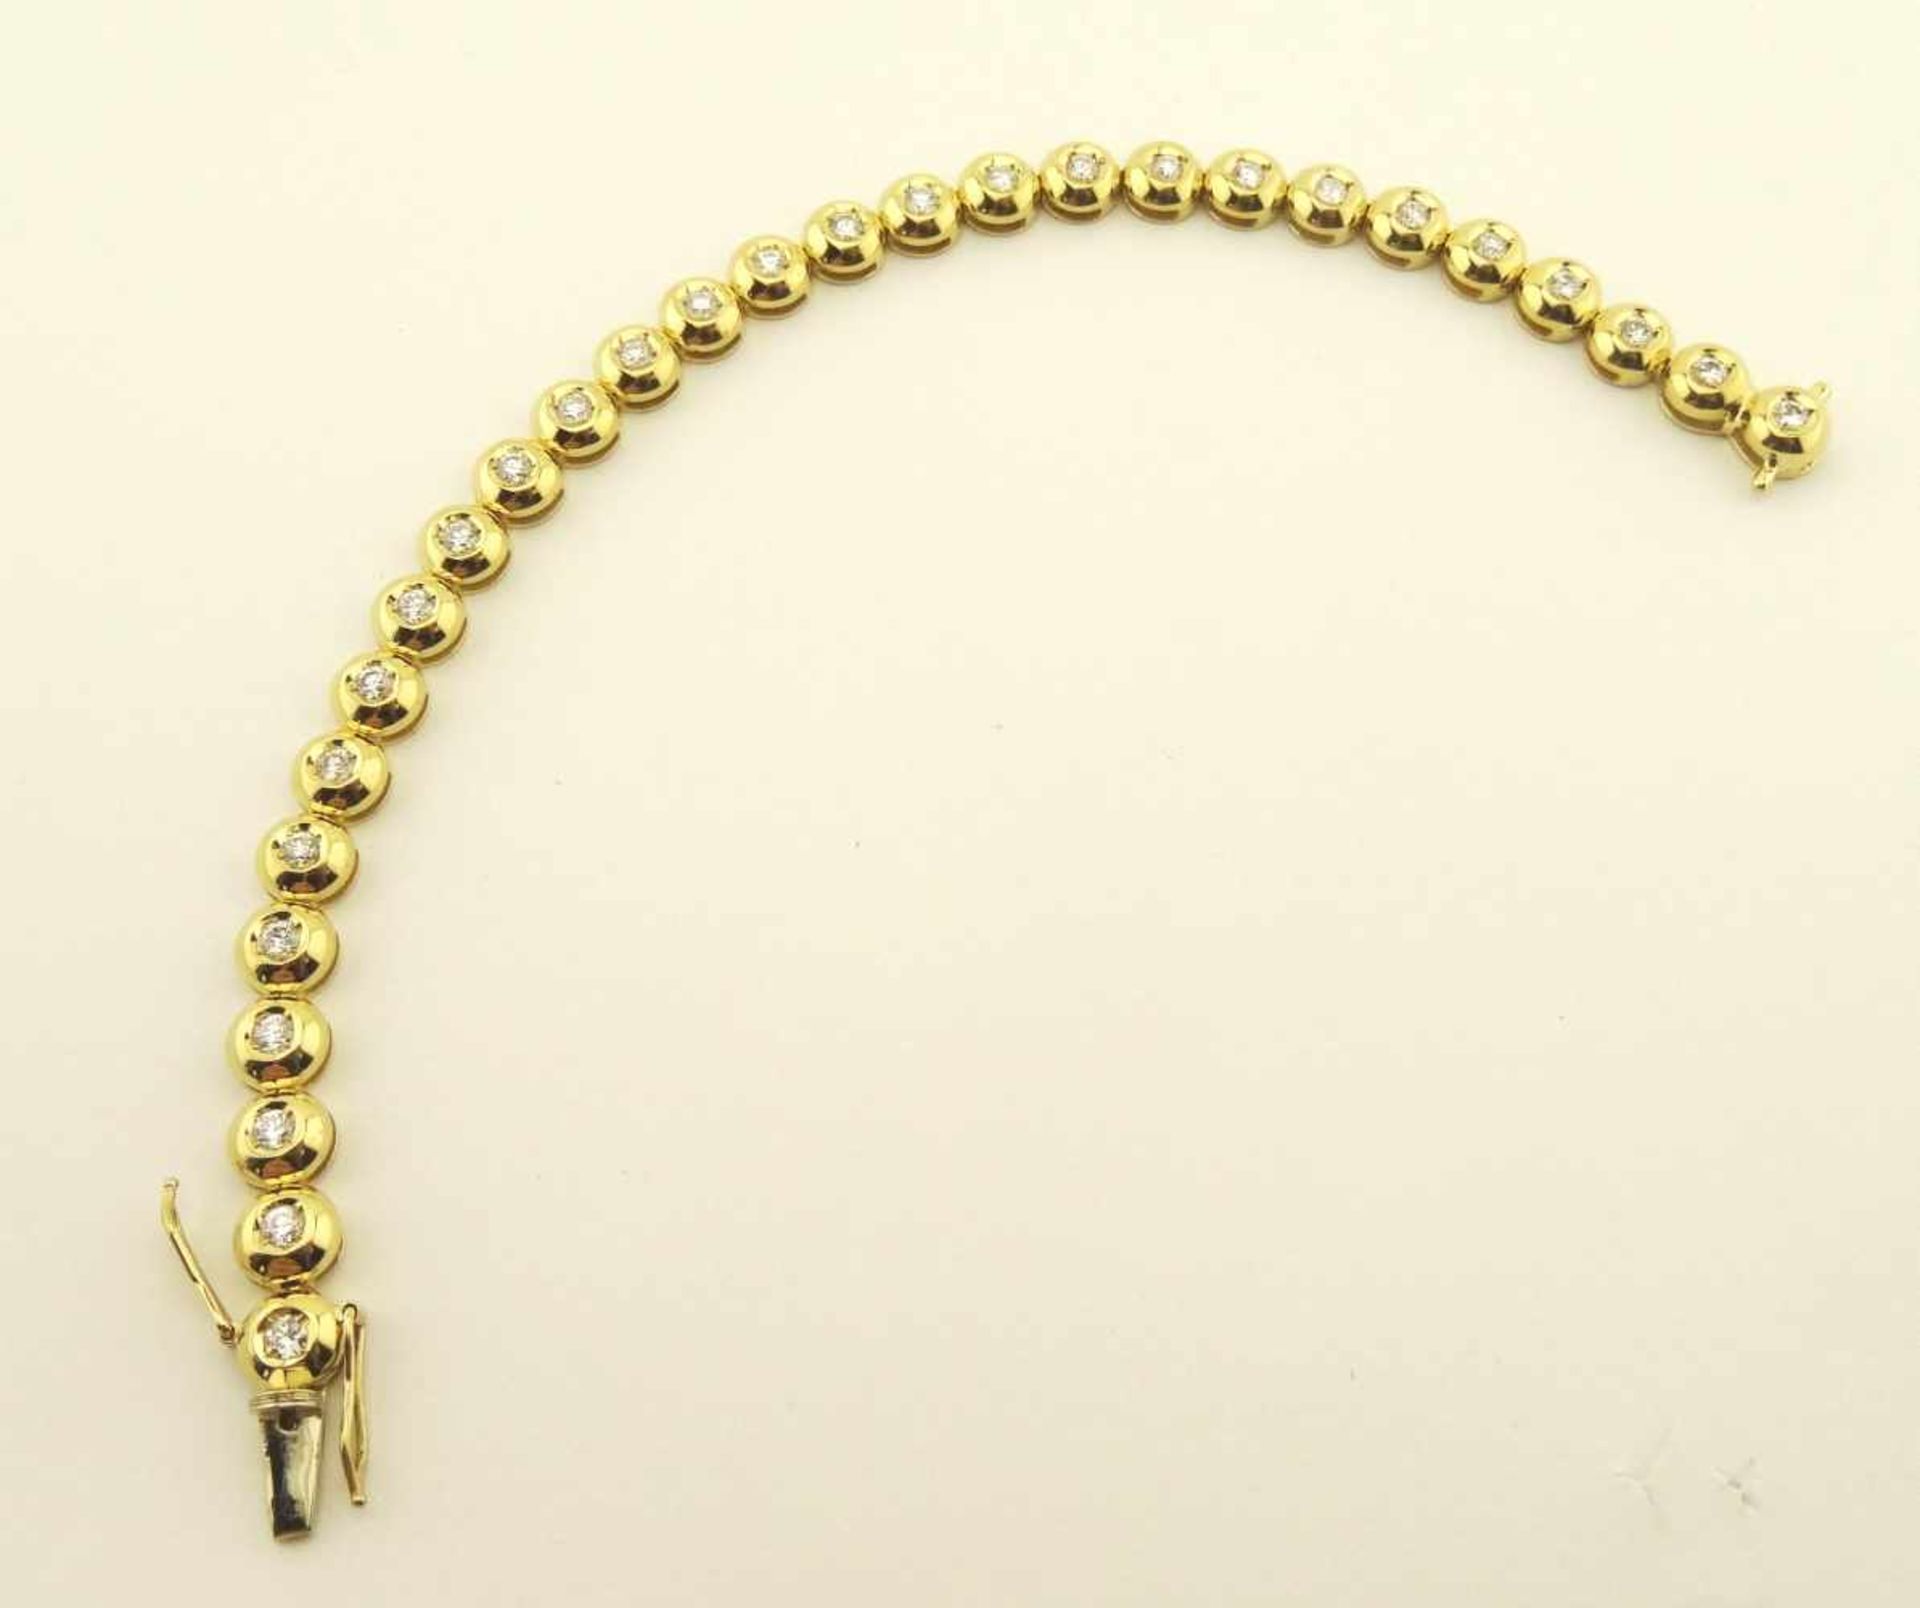 Tennisarmband 585 Gold Brillant mit 28 Brillanten a ca. 0,07ct ges. ca. 2 ct. TW/ pi1, Länge ca.